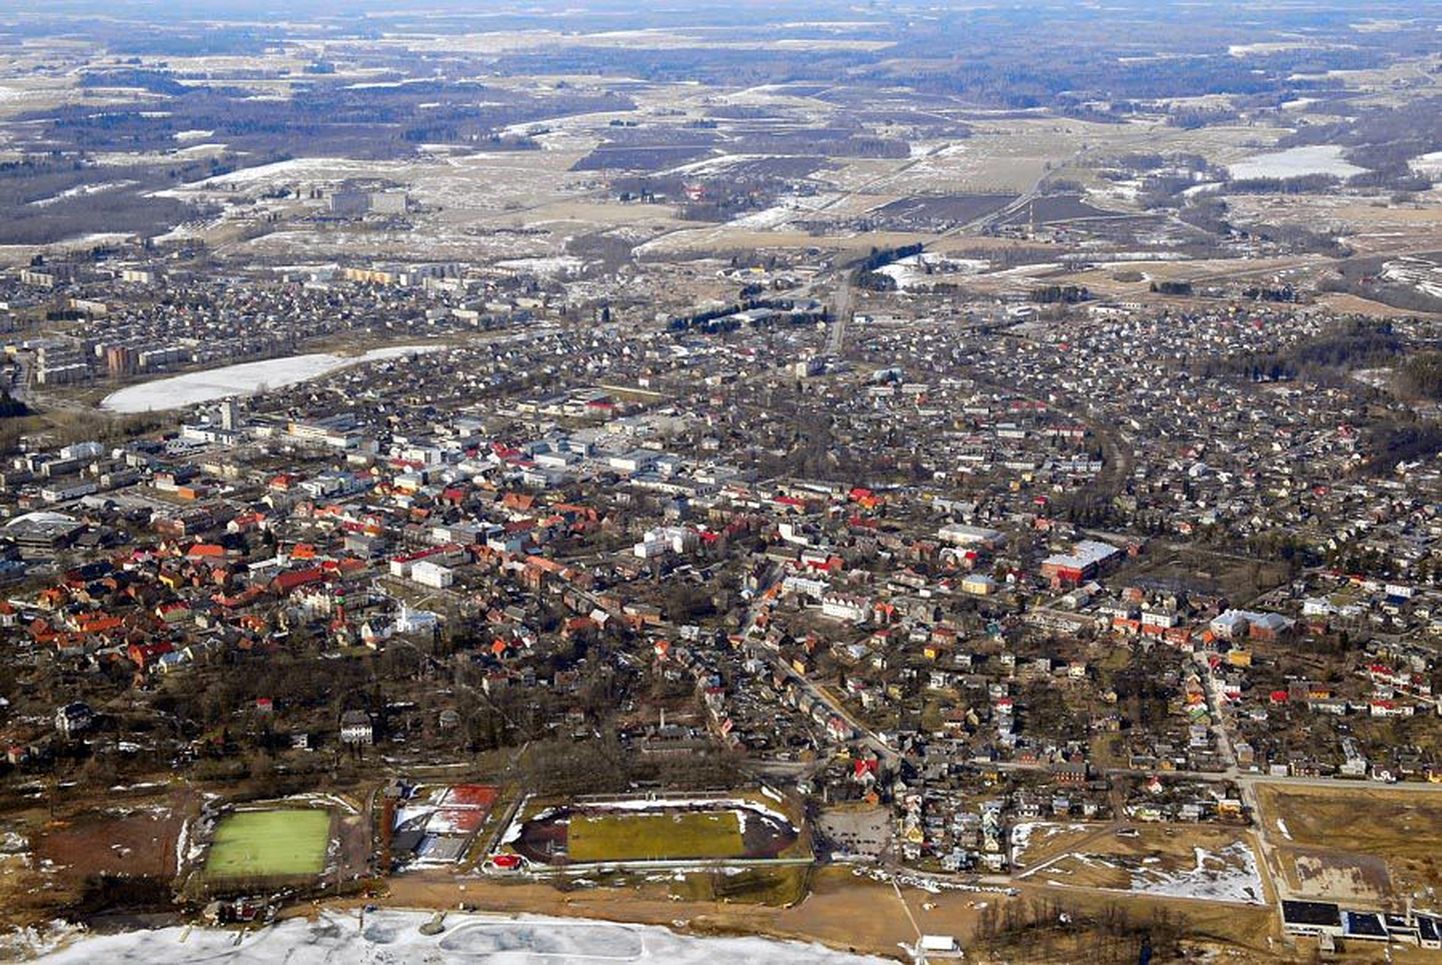 Läinud nädalal esitletud maaelu arengu aruande järgi sõltub Eesti maaelu tugevalt väikelinnade arengust.